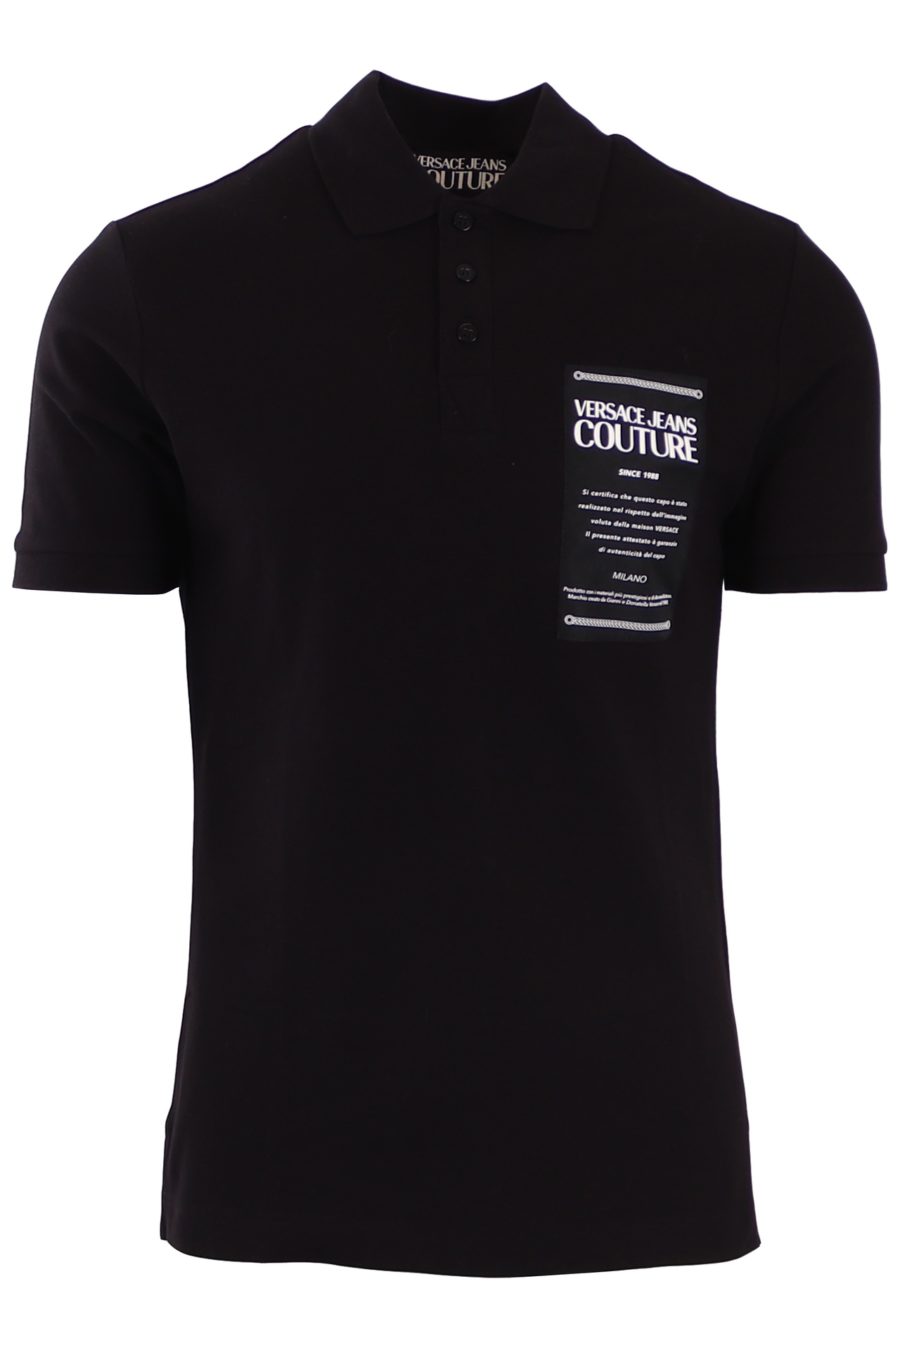 Polo Versace Jeans Couture negro con logo y texto blanco pequeño - 570400303e24e6bb550173e3ef3081942590640a